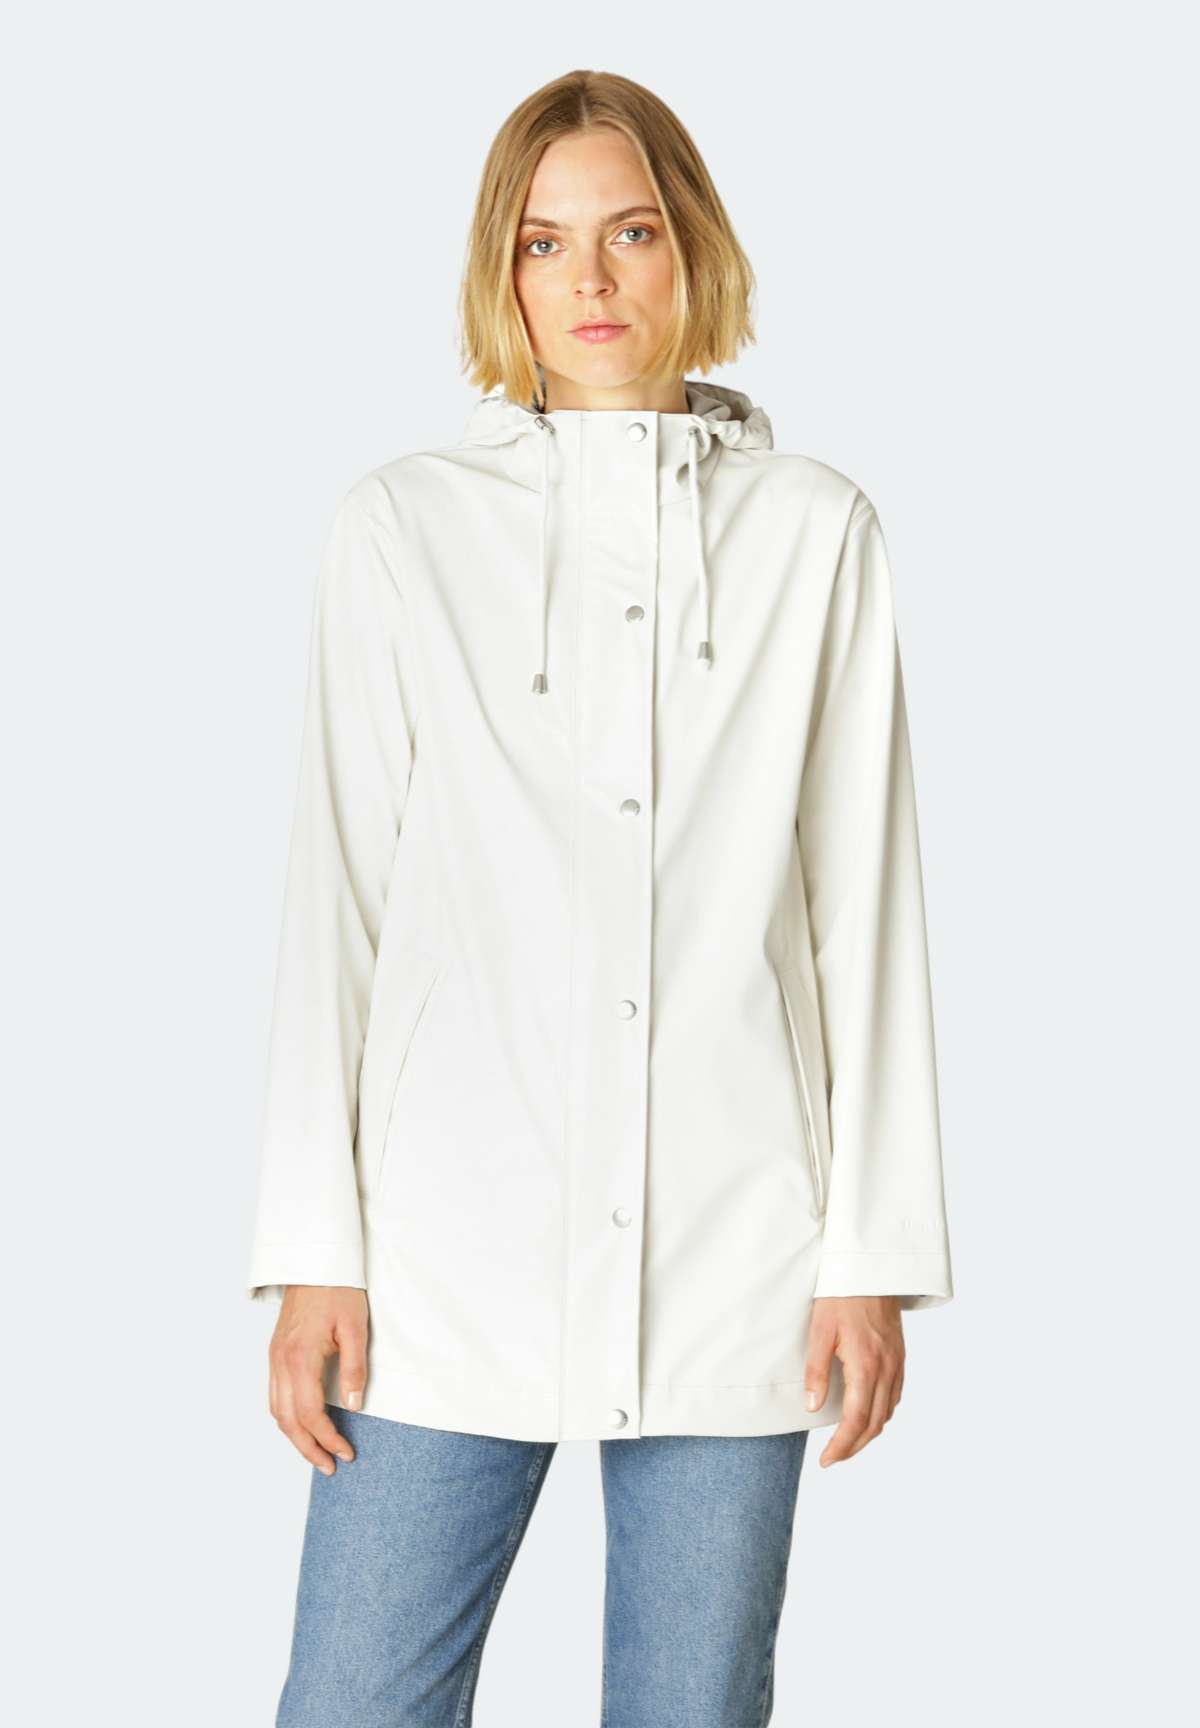 Куртка от дождя и грязи, с капюшоном, ПУ покрытие, хлопковый трикотаж, 5000...